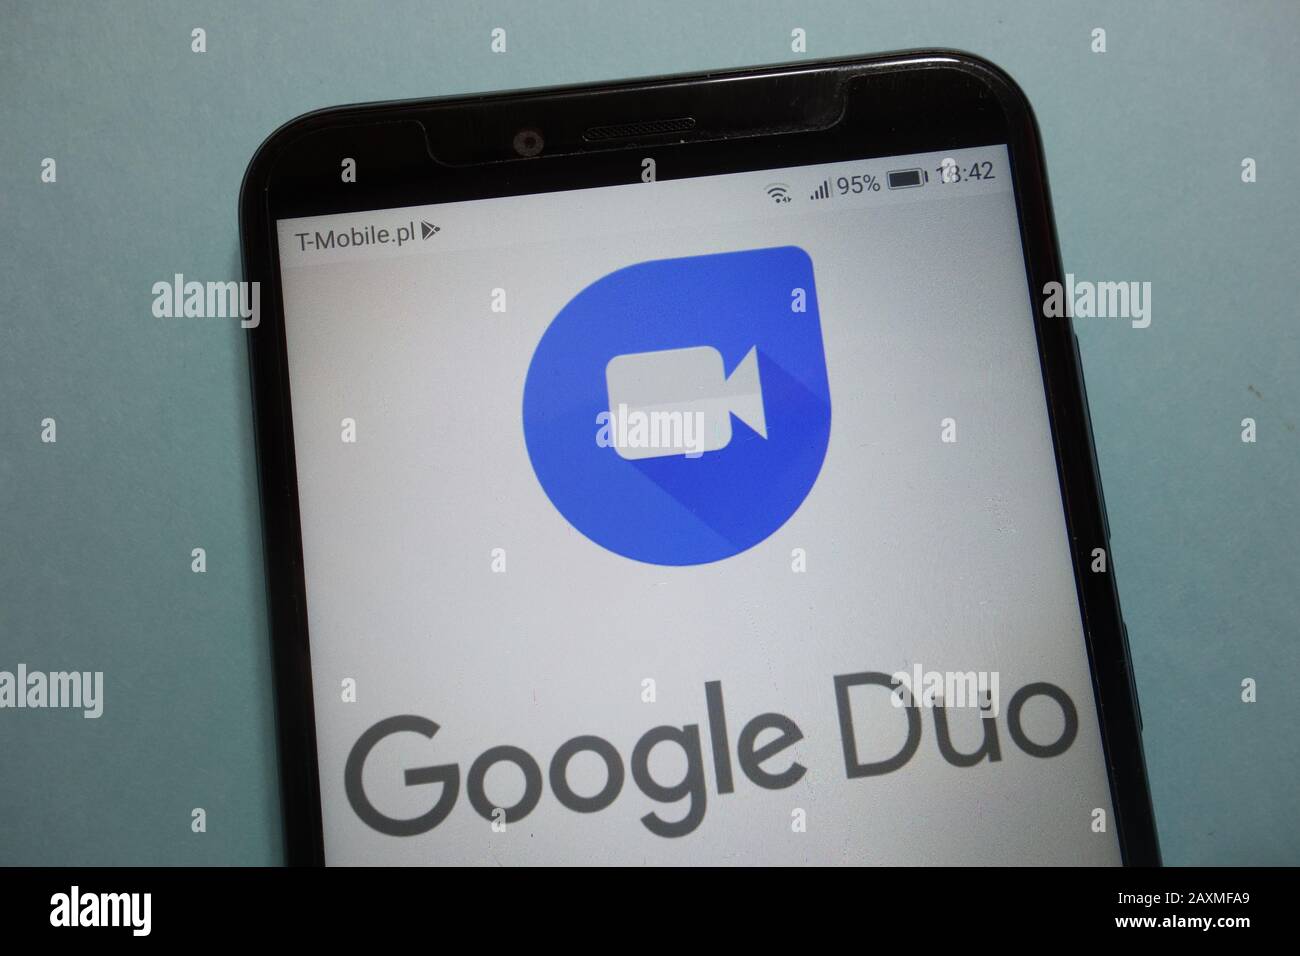 Logotipo de Google Duo en el smartphone Foto de stock